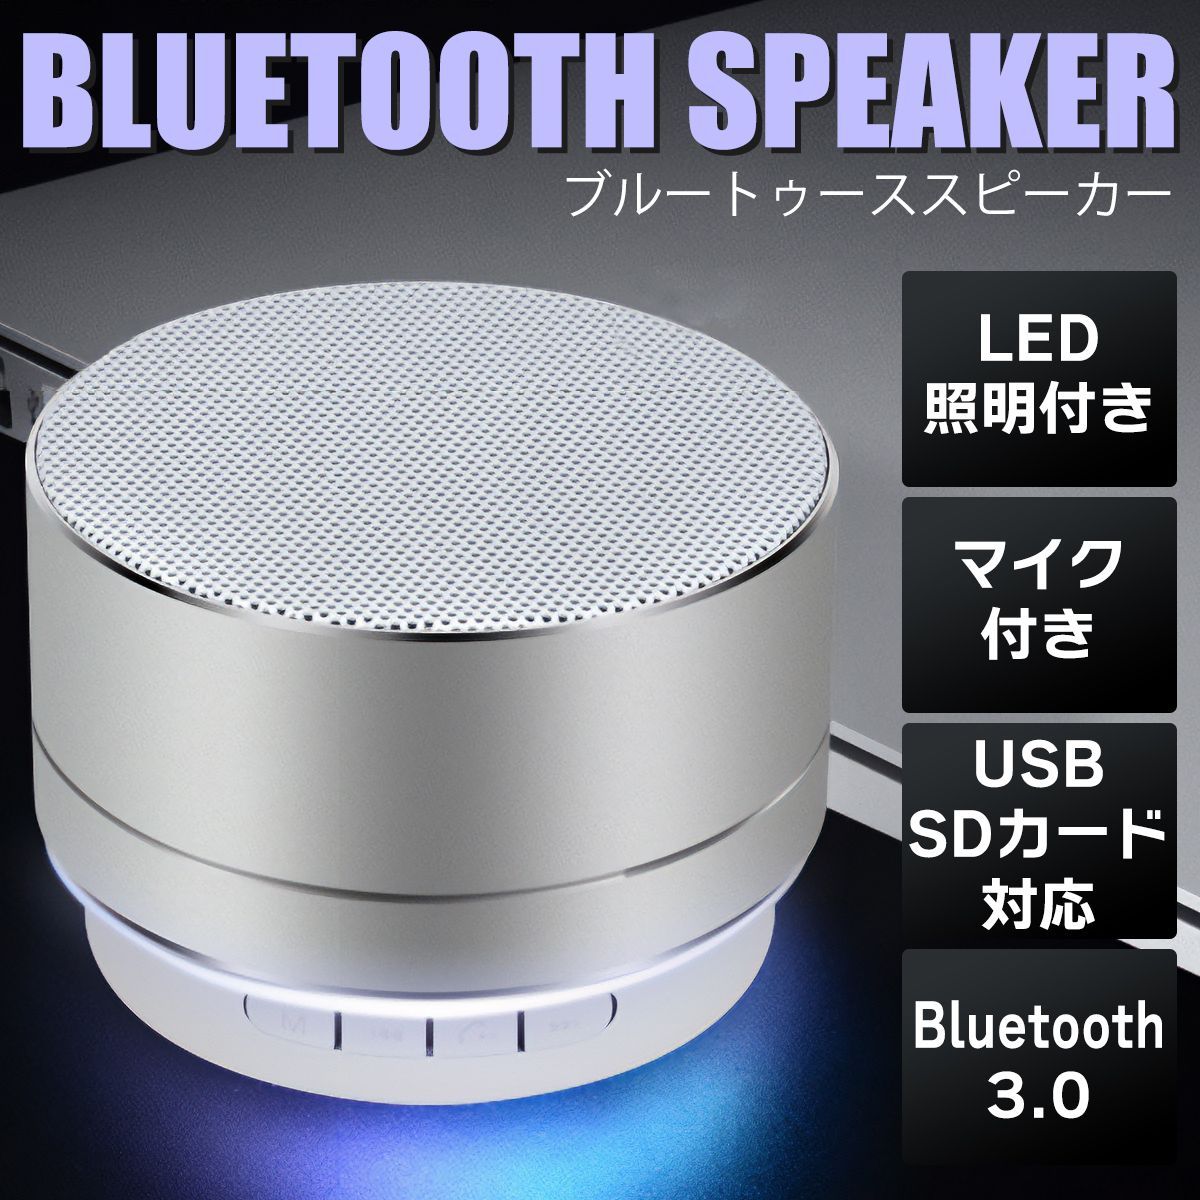 Bluetooth スピーカー 銀 ポータブル 小型 LED 軽量 M-31 - スピーカー